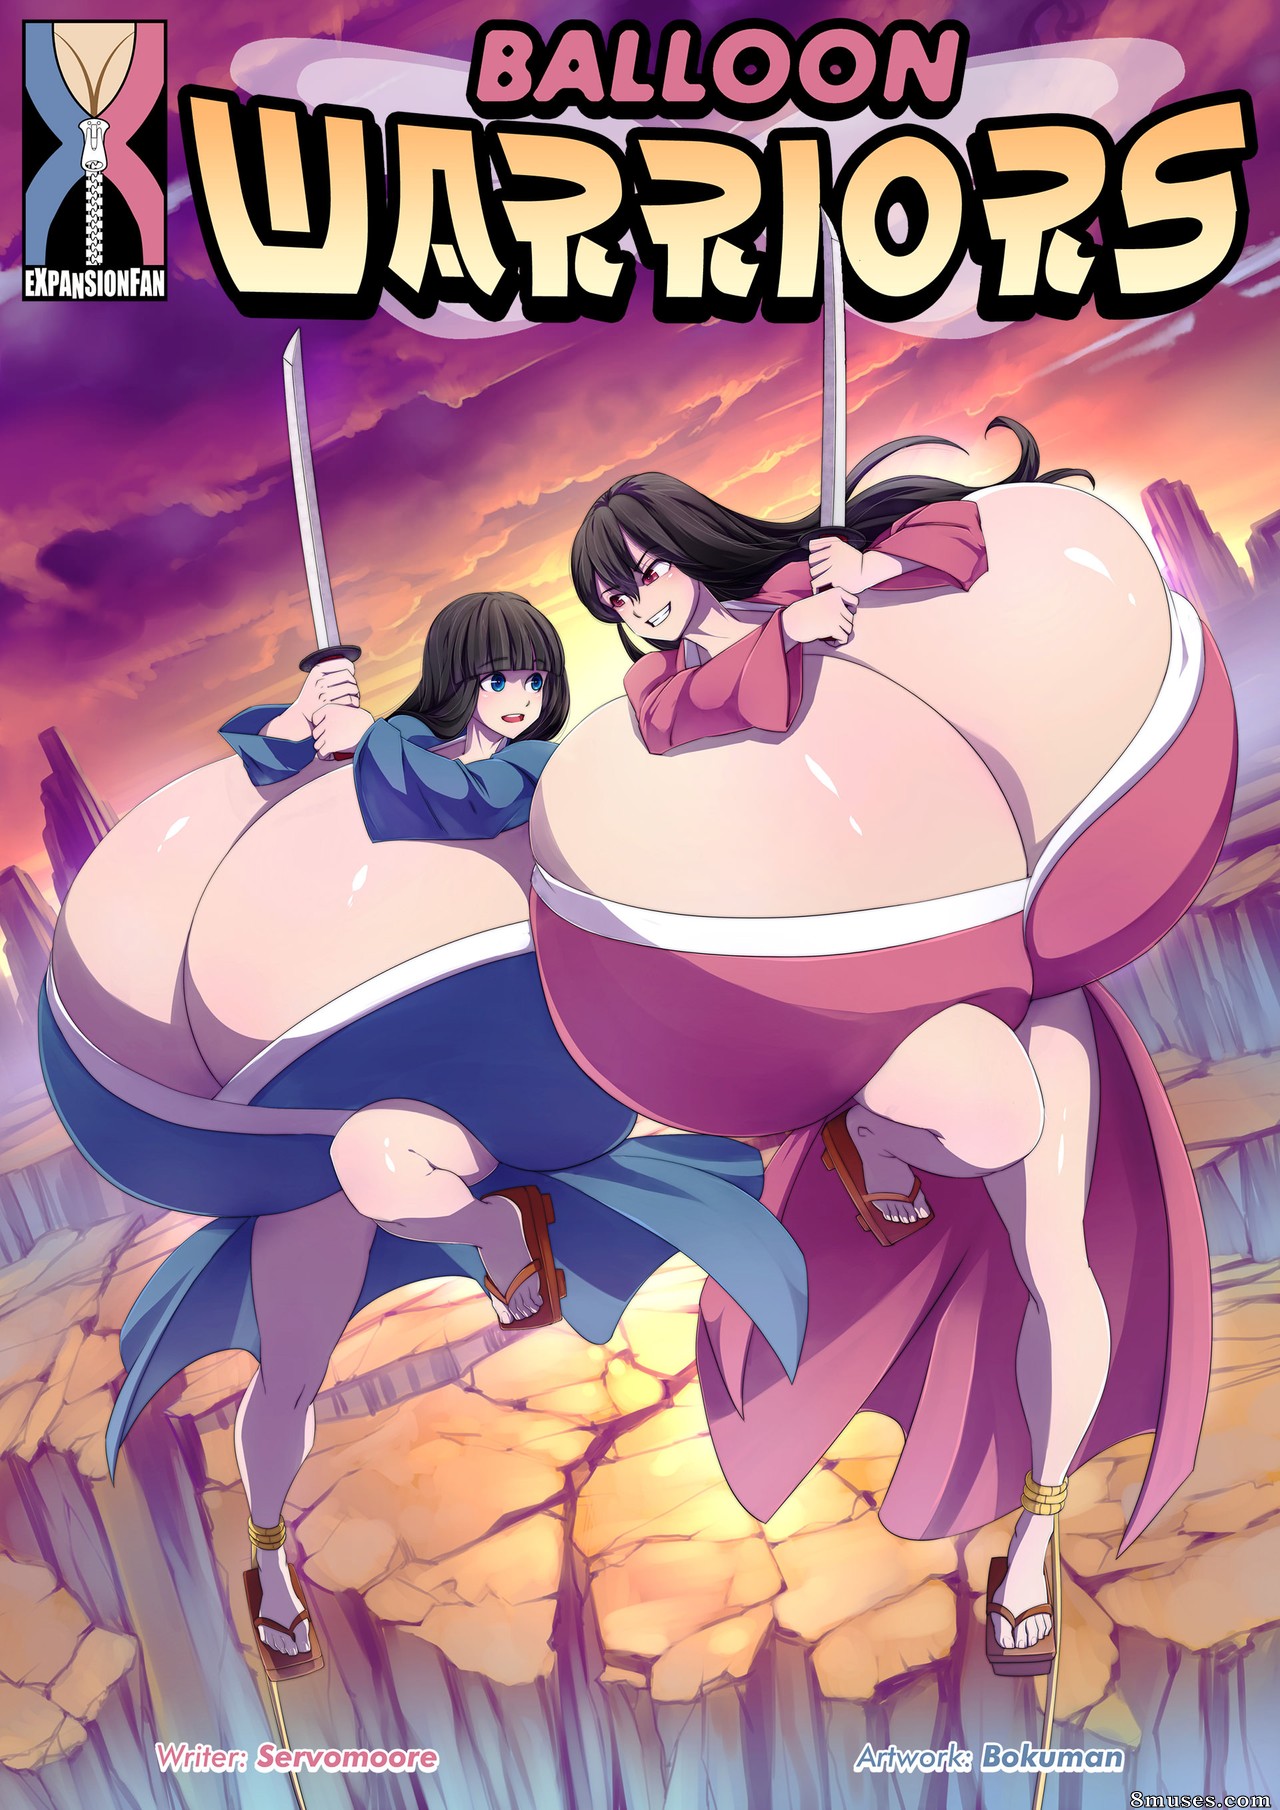 Anime Worrior Cartoon Porn - Balloon Warriors - 8muses Comics - Sex Comics and Porn Cartoons